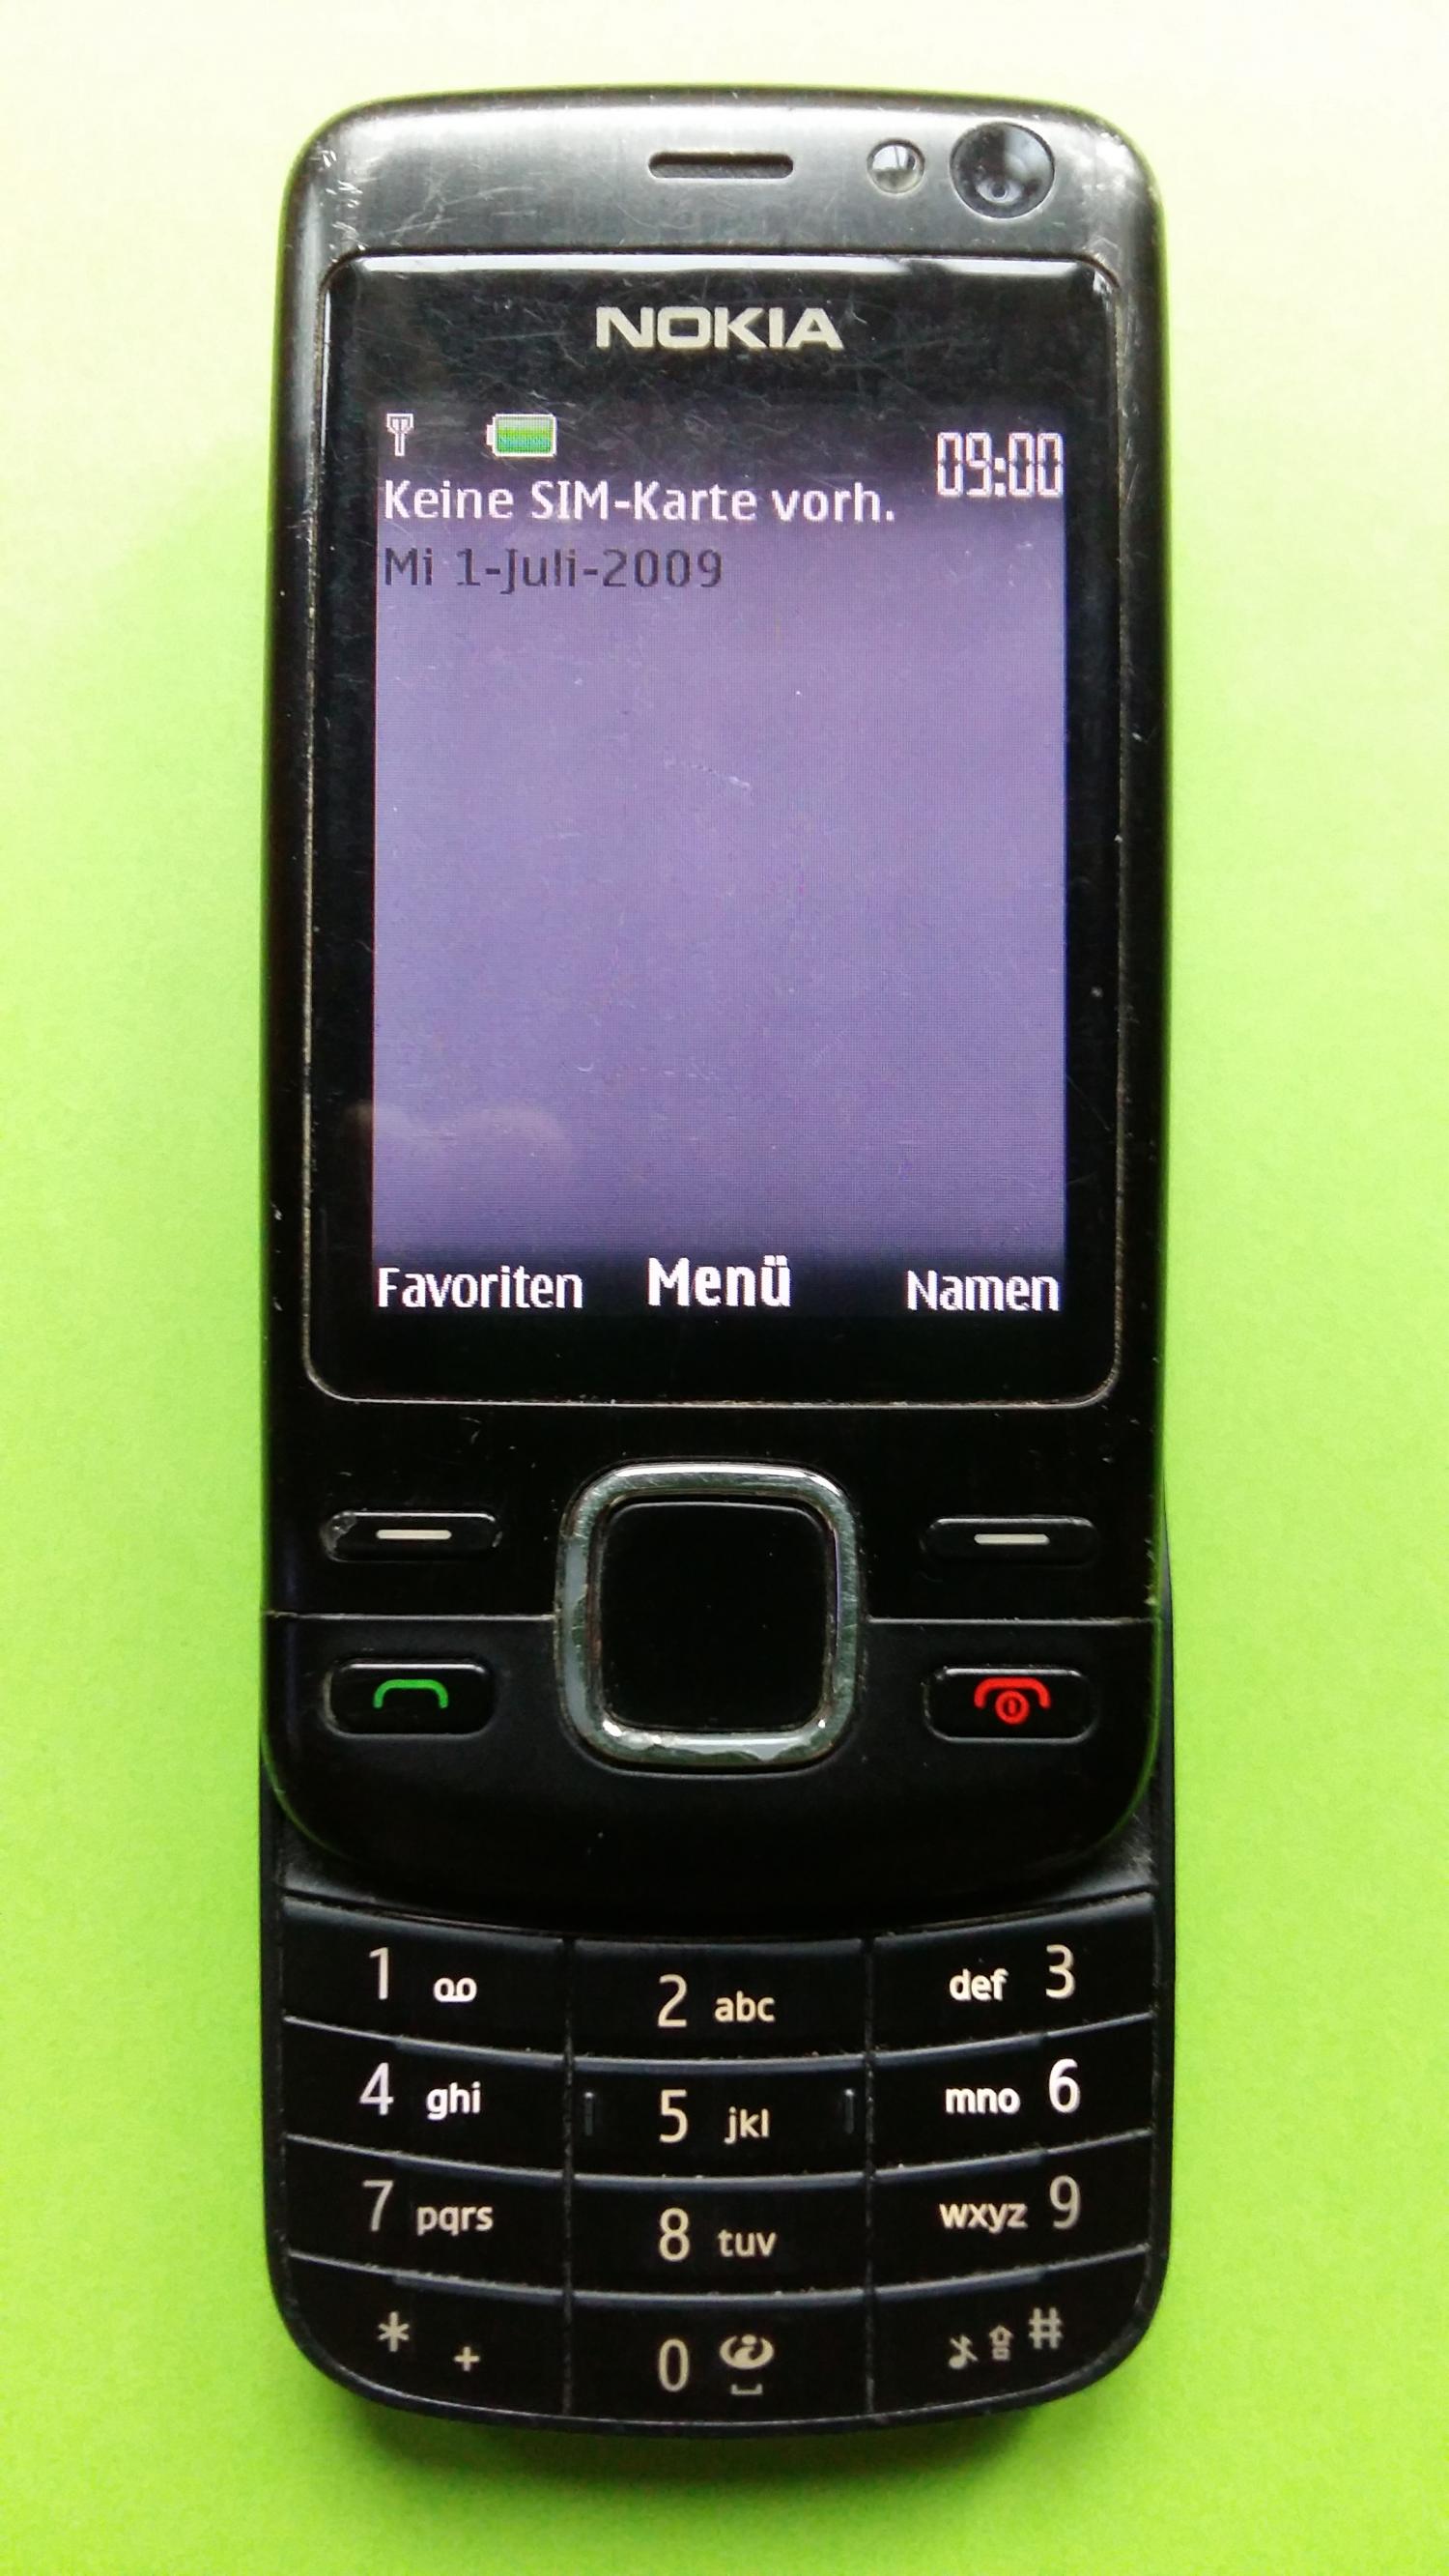 image-7301611-Nokia 6600i-1C (2)2.jpg